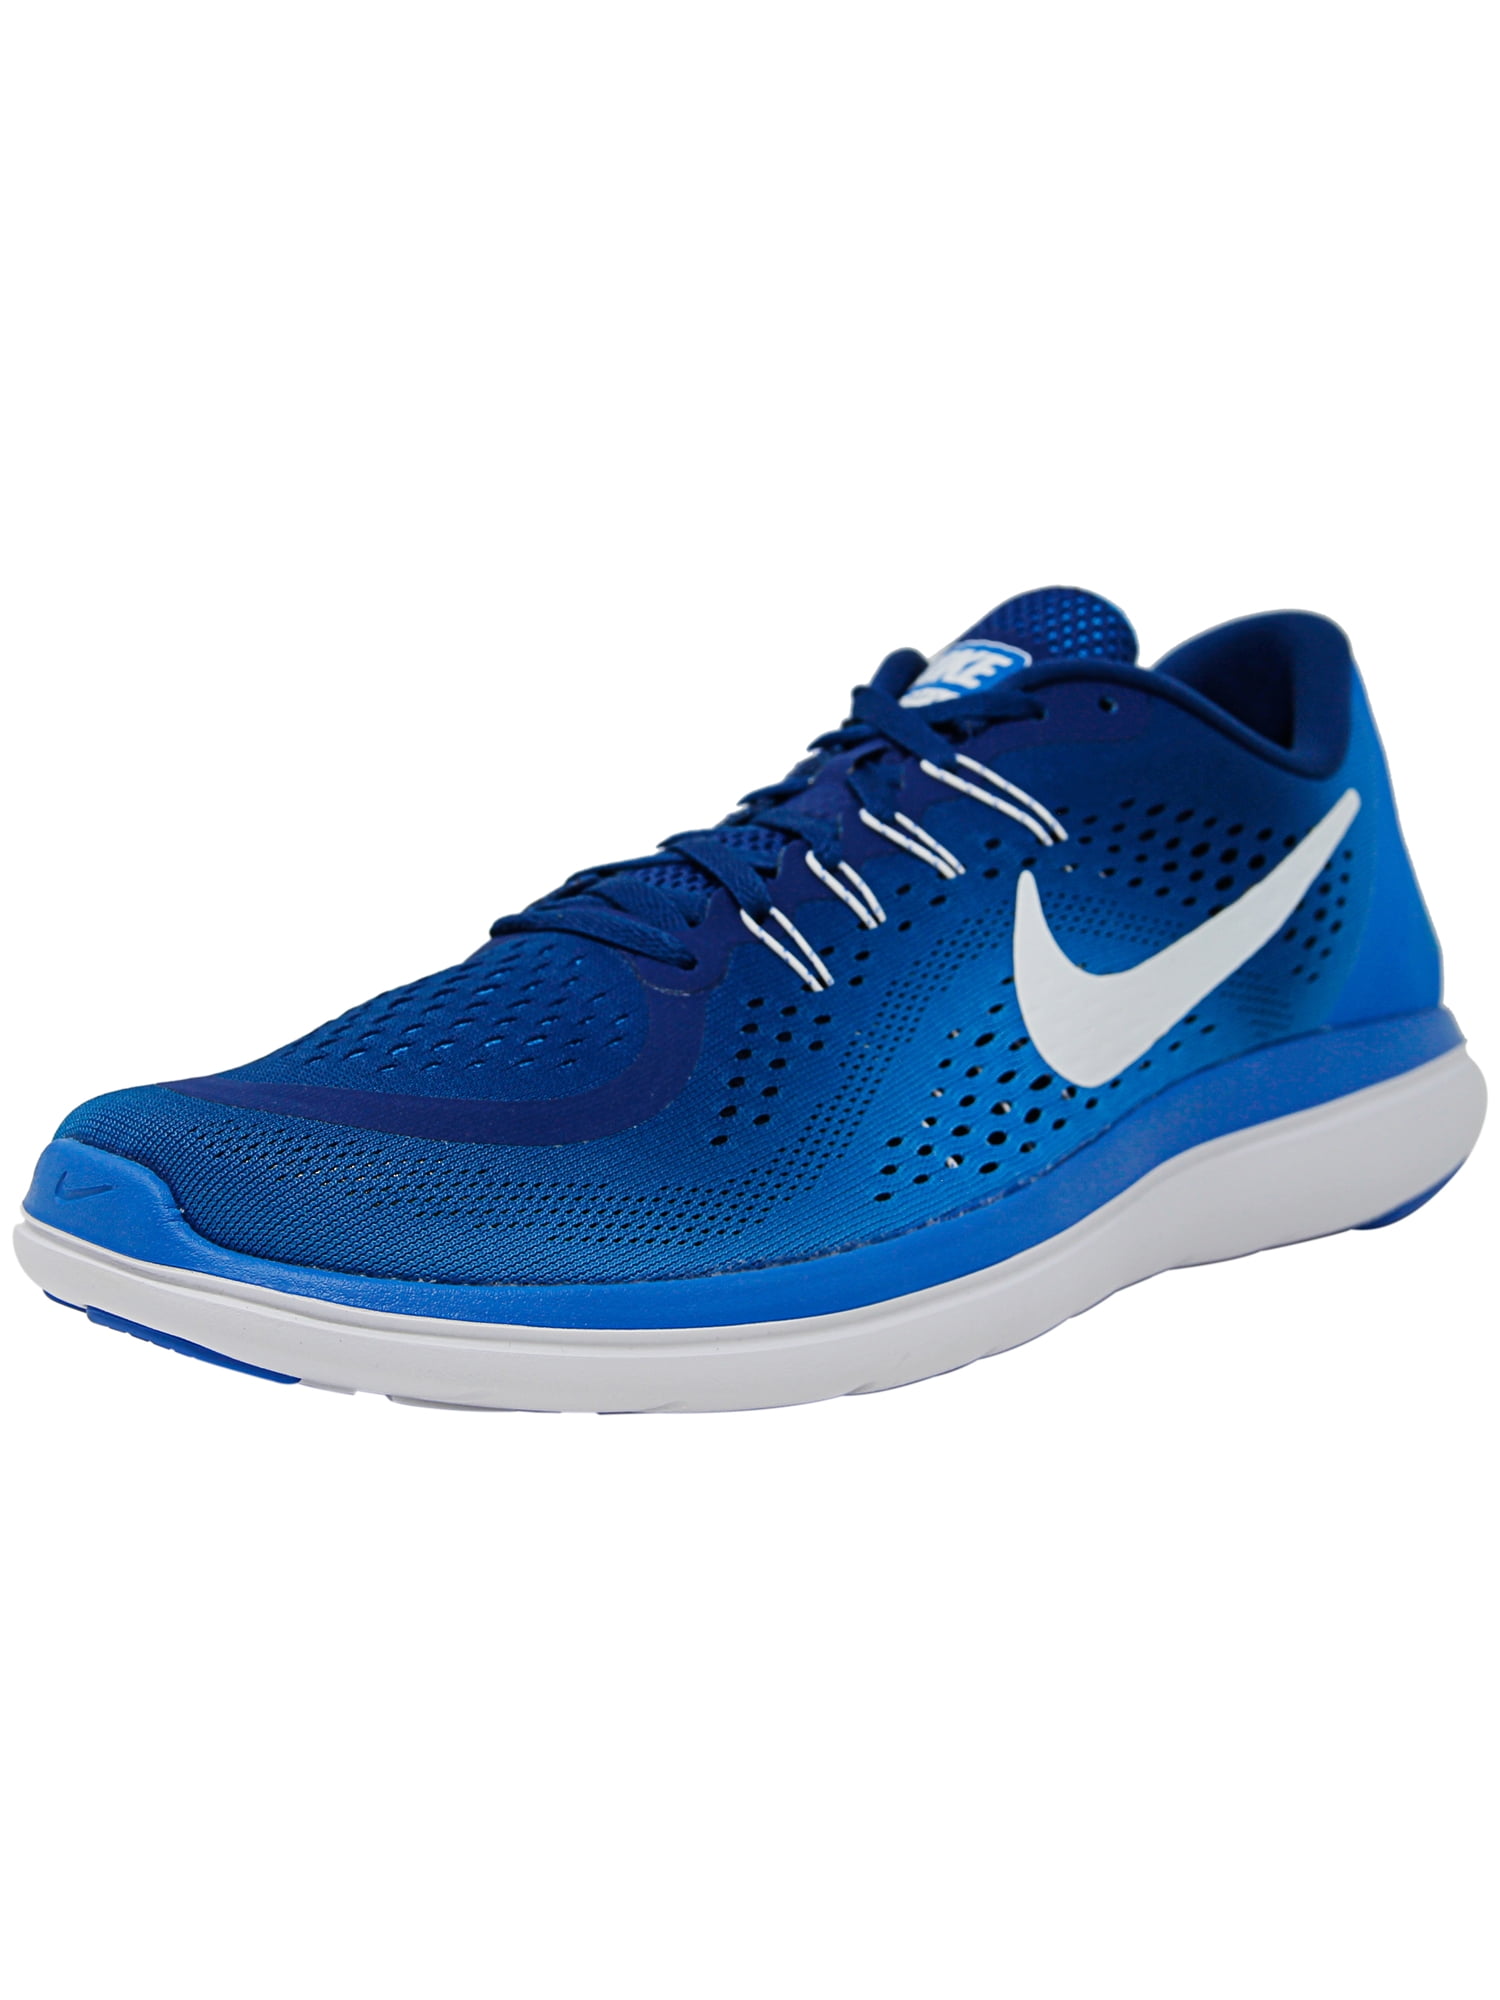 Nike Men's Flex 2017 Rn Gum Blue / White - Photo Ankle-High Running Shoe -